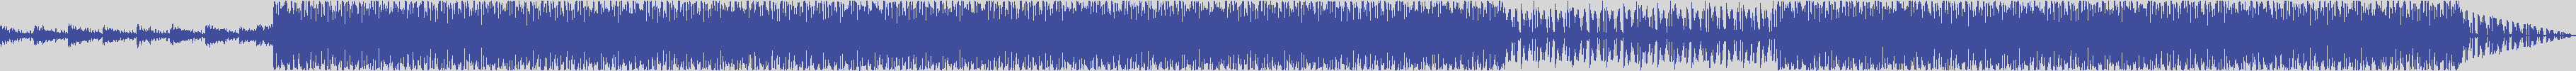 noclouds_chillout [NOC064] Itb Sea - Bond Page [Original Mix] audio wave form